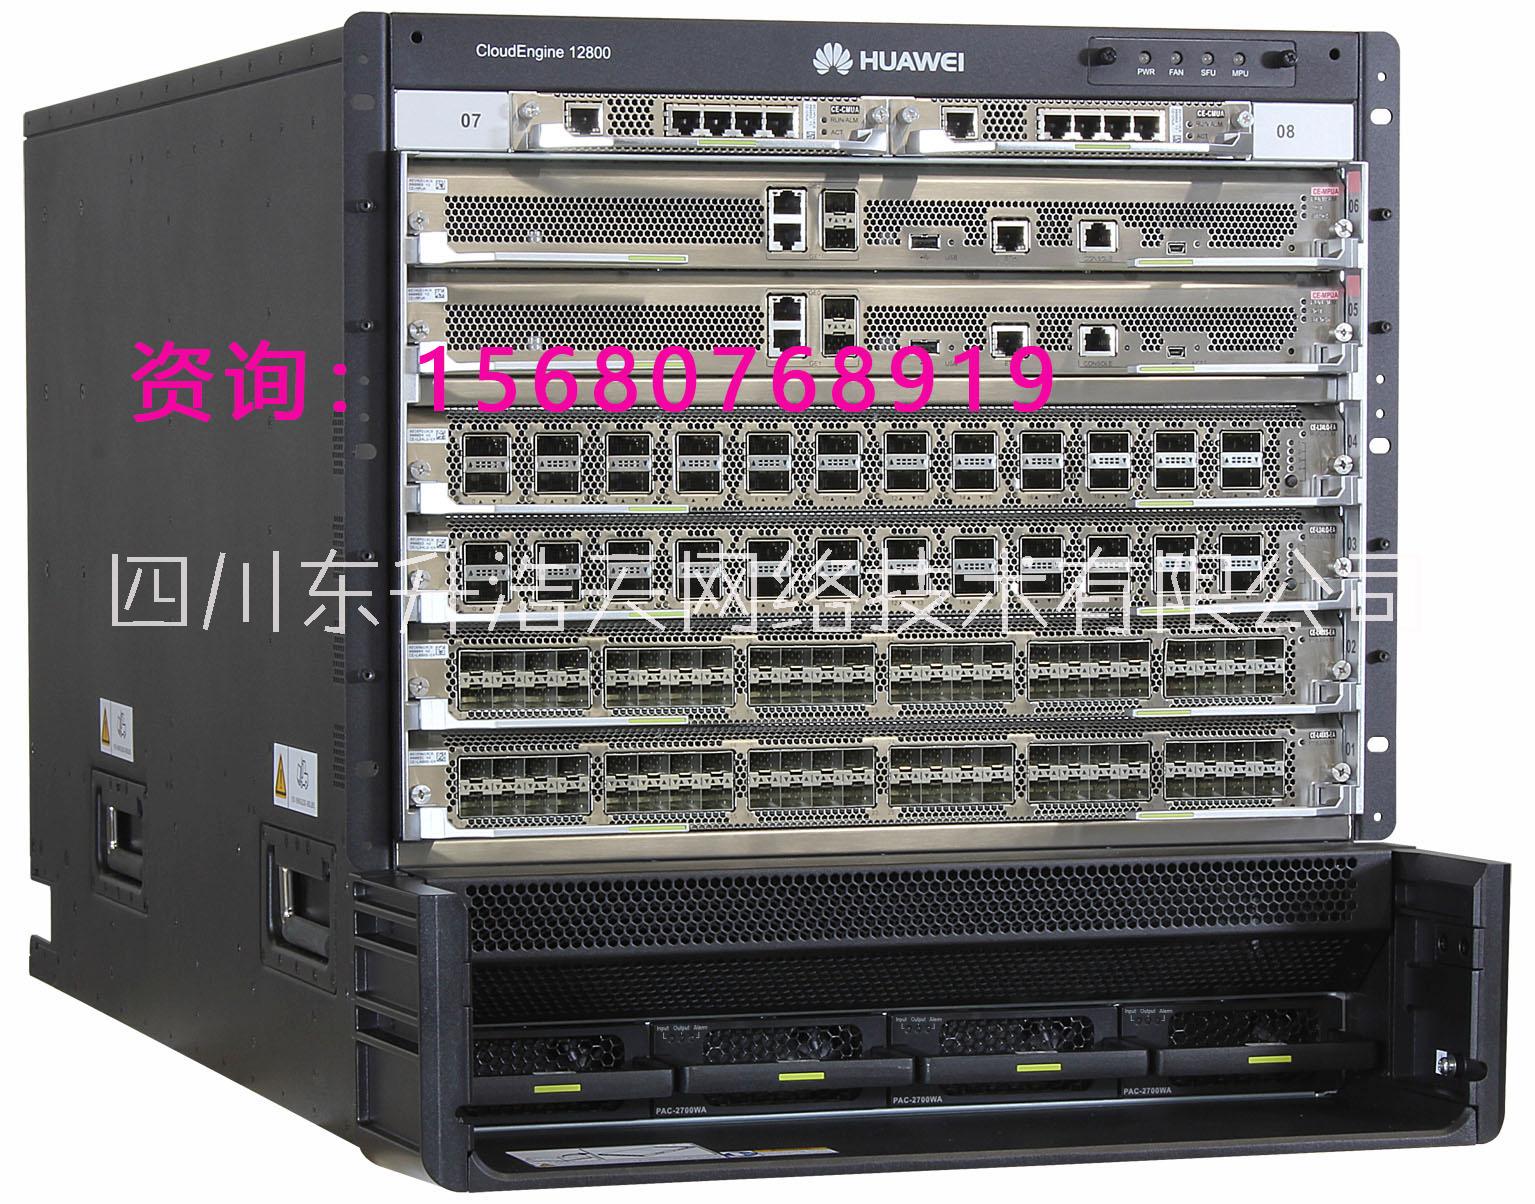 数据中心CE12808/1280回收华为/思科数据中心CE12808/12804大型数据中心核心设备现货库存